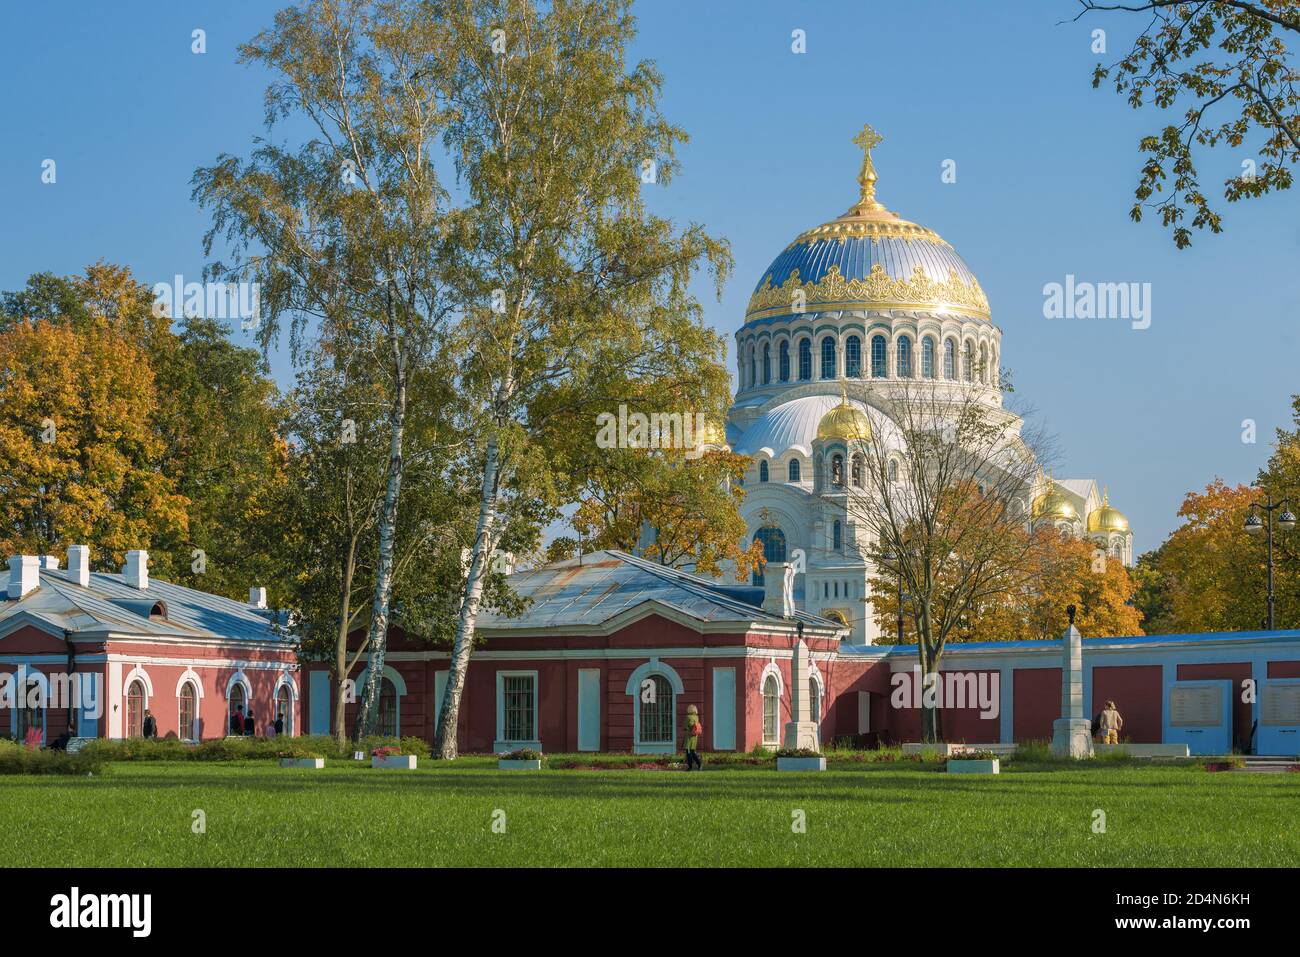 Le jour de septembre ensoleillé sur le territoire de l'Amirauté de l'empereur Pierre le Grand. Kronshtadt, Saint-Pétersbourg, Russie Banque D'Images